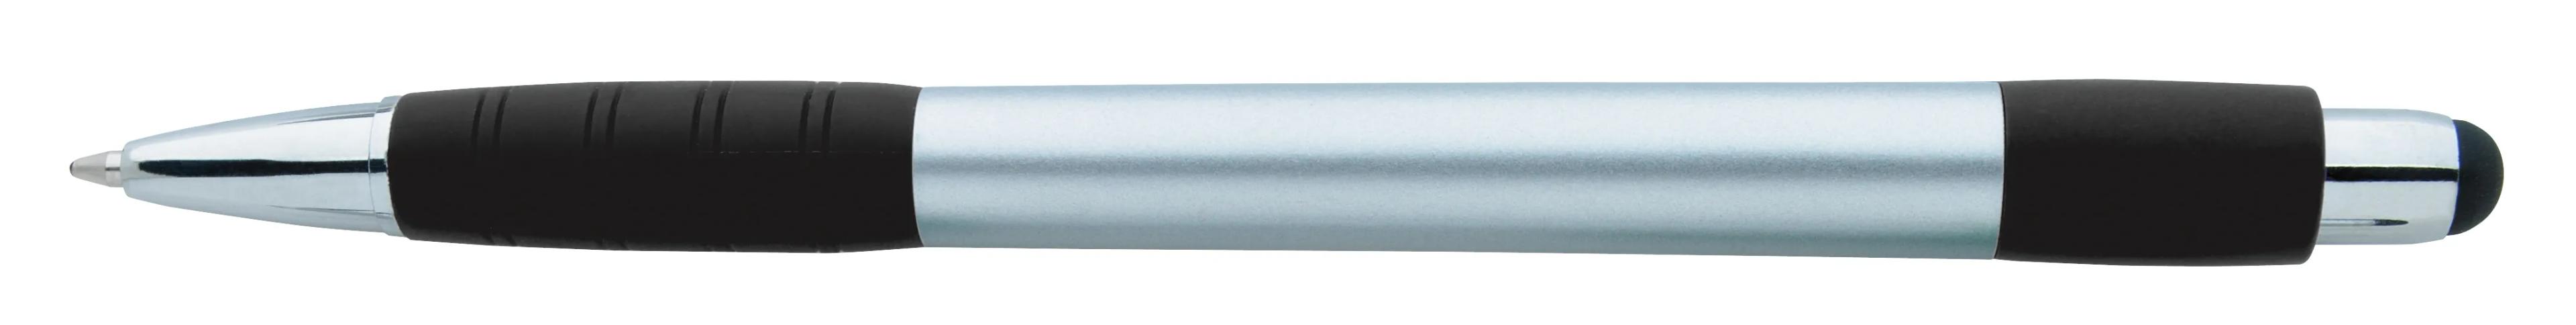 Silver Element Stylus Pen 1 of 53